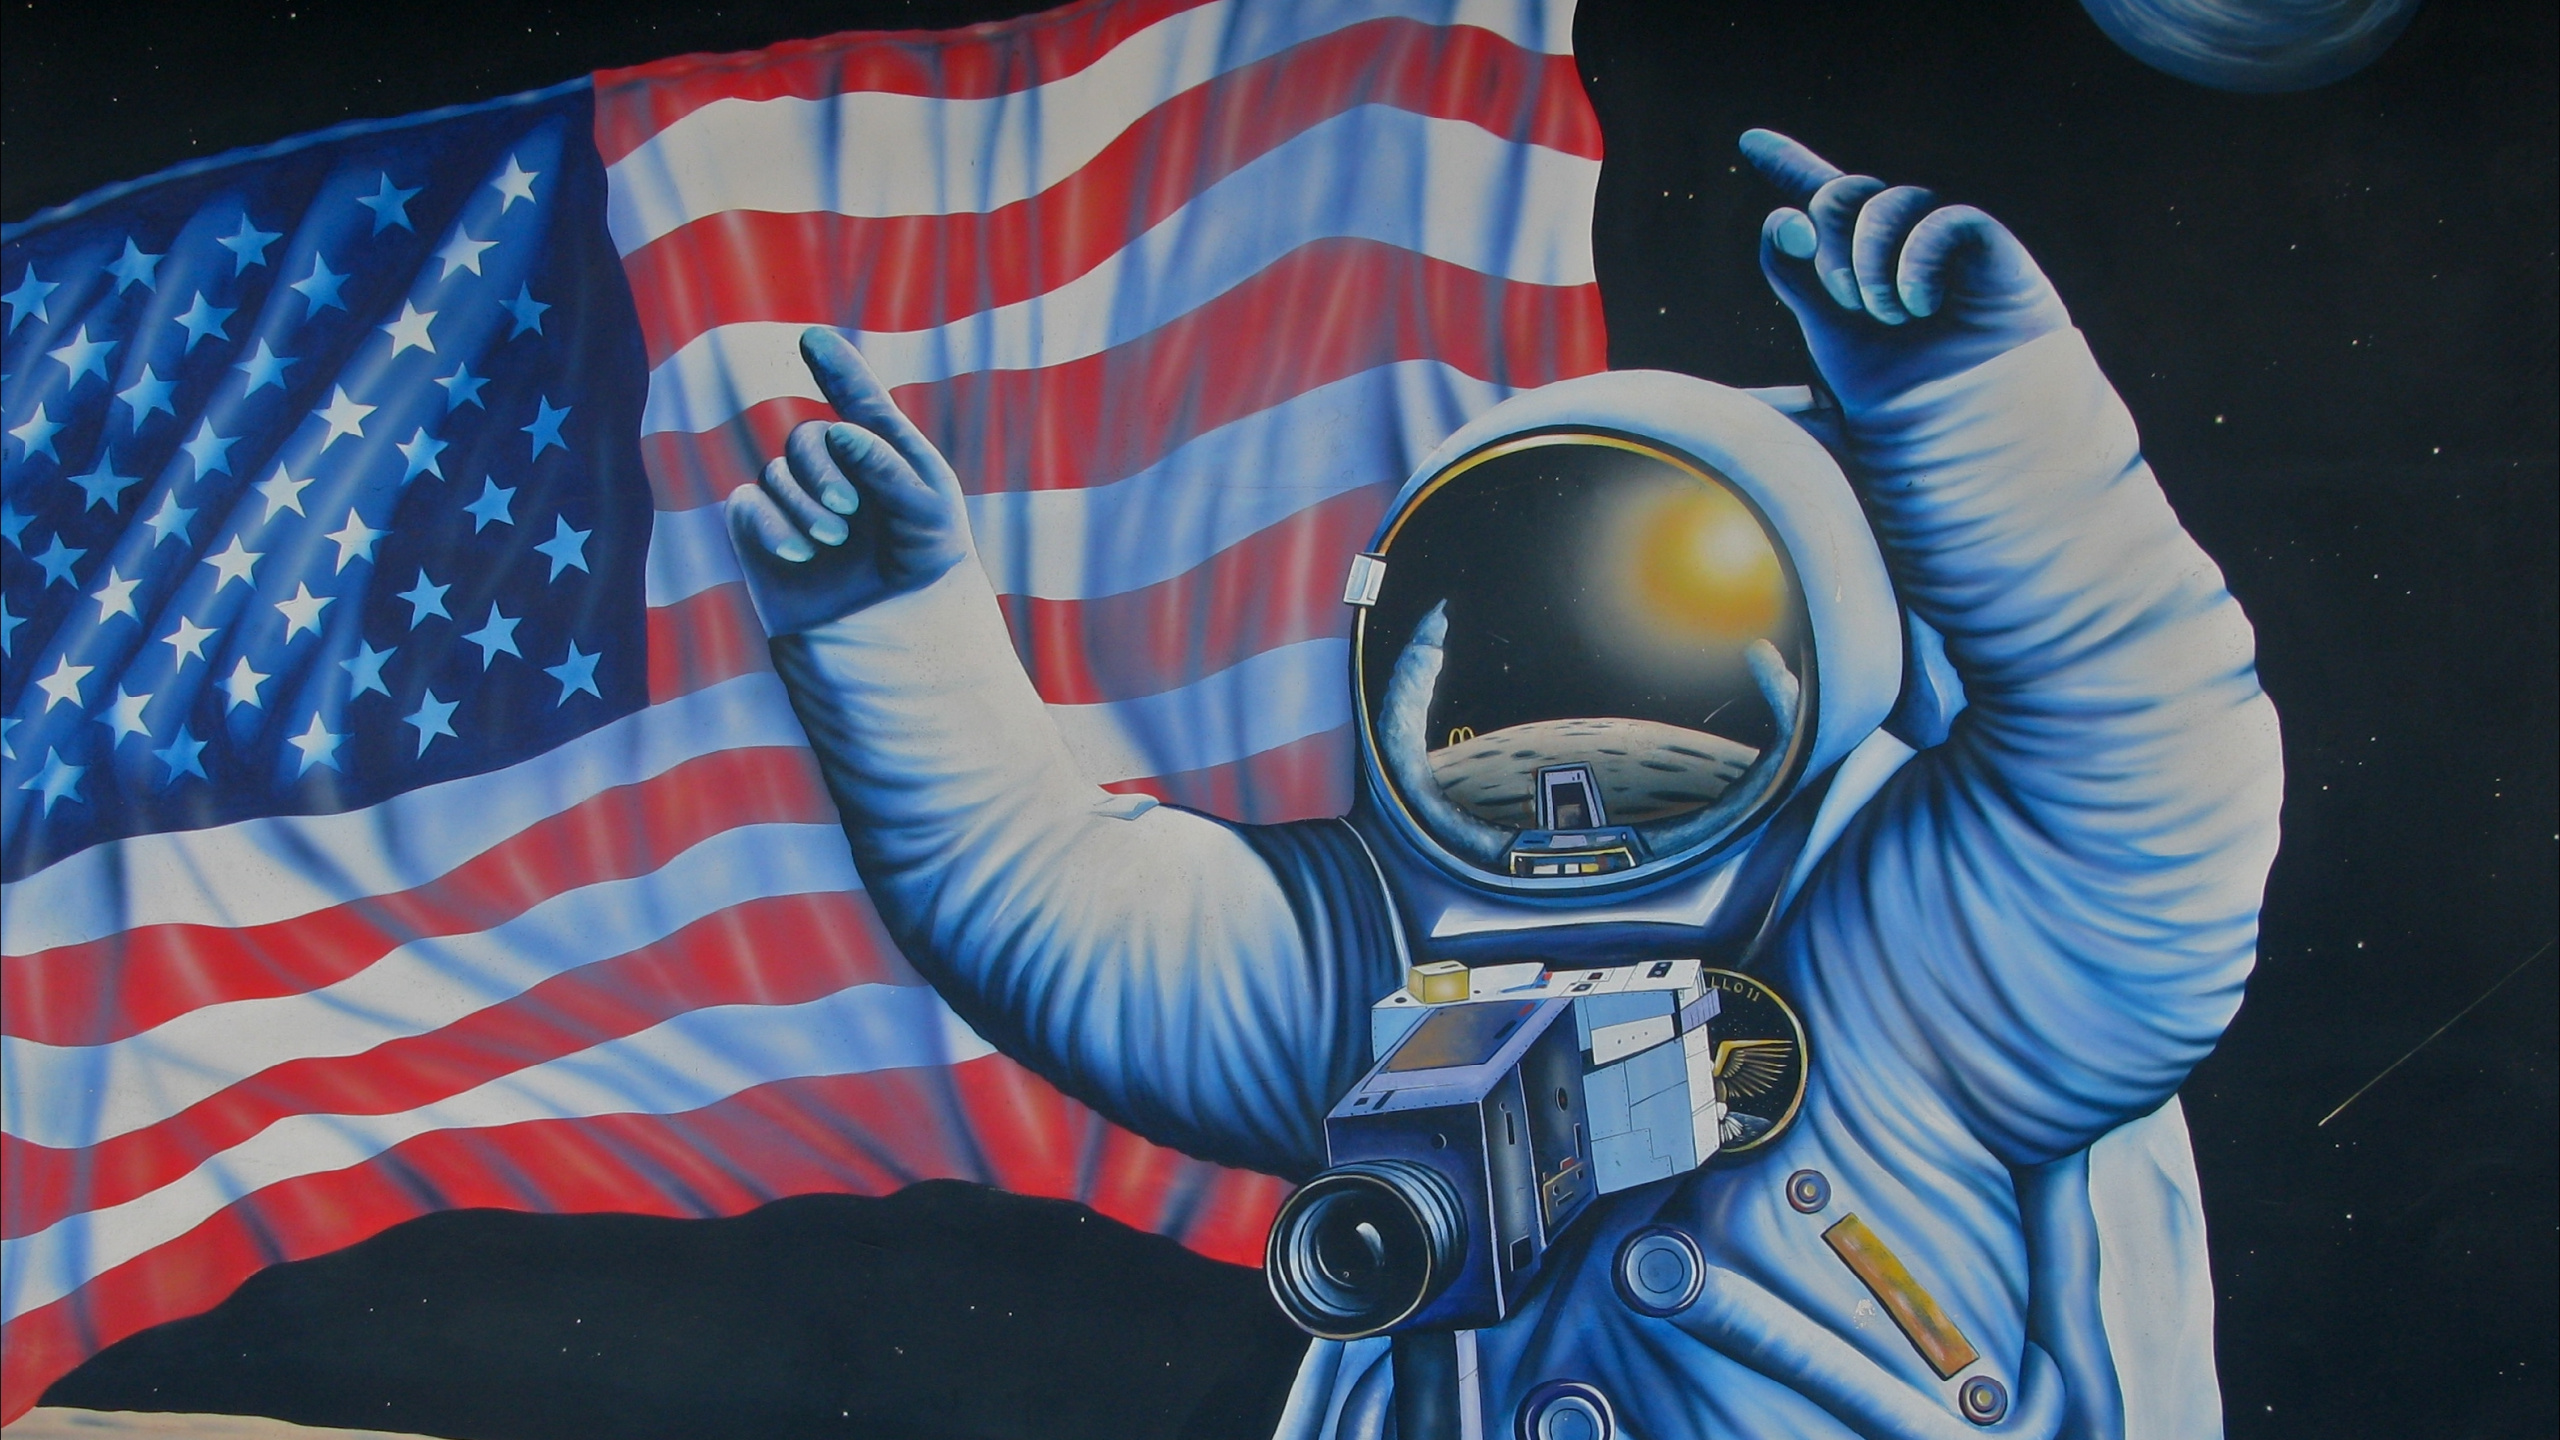 艺术, 宇航员, 街头艺术, 空间, 涂鸦 壁纸 2560x1440 允许